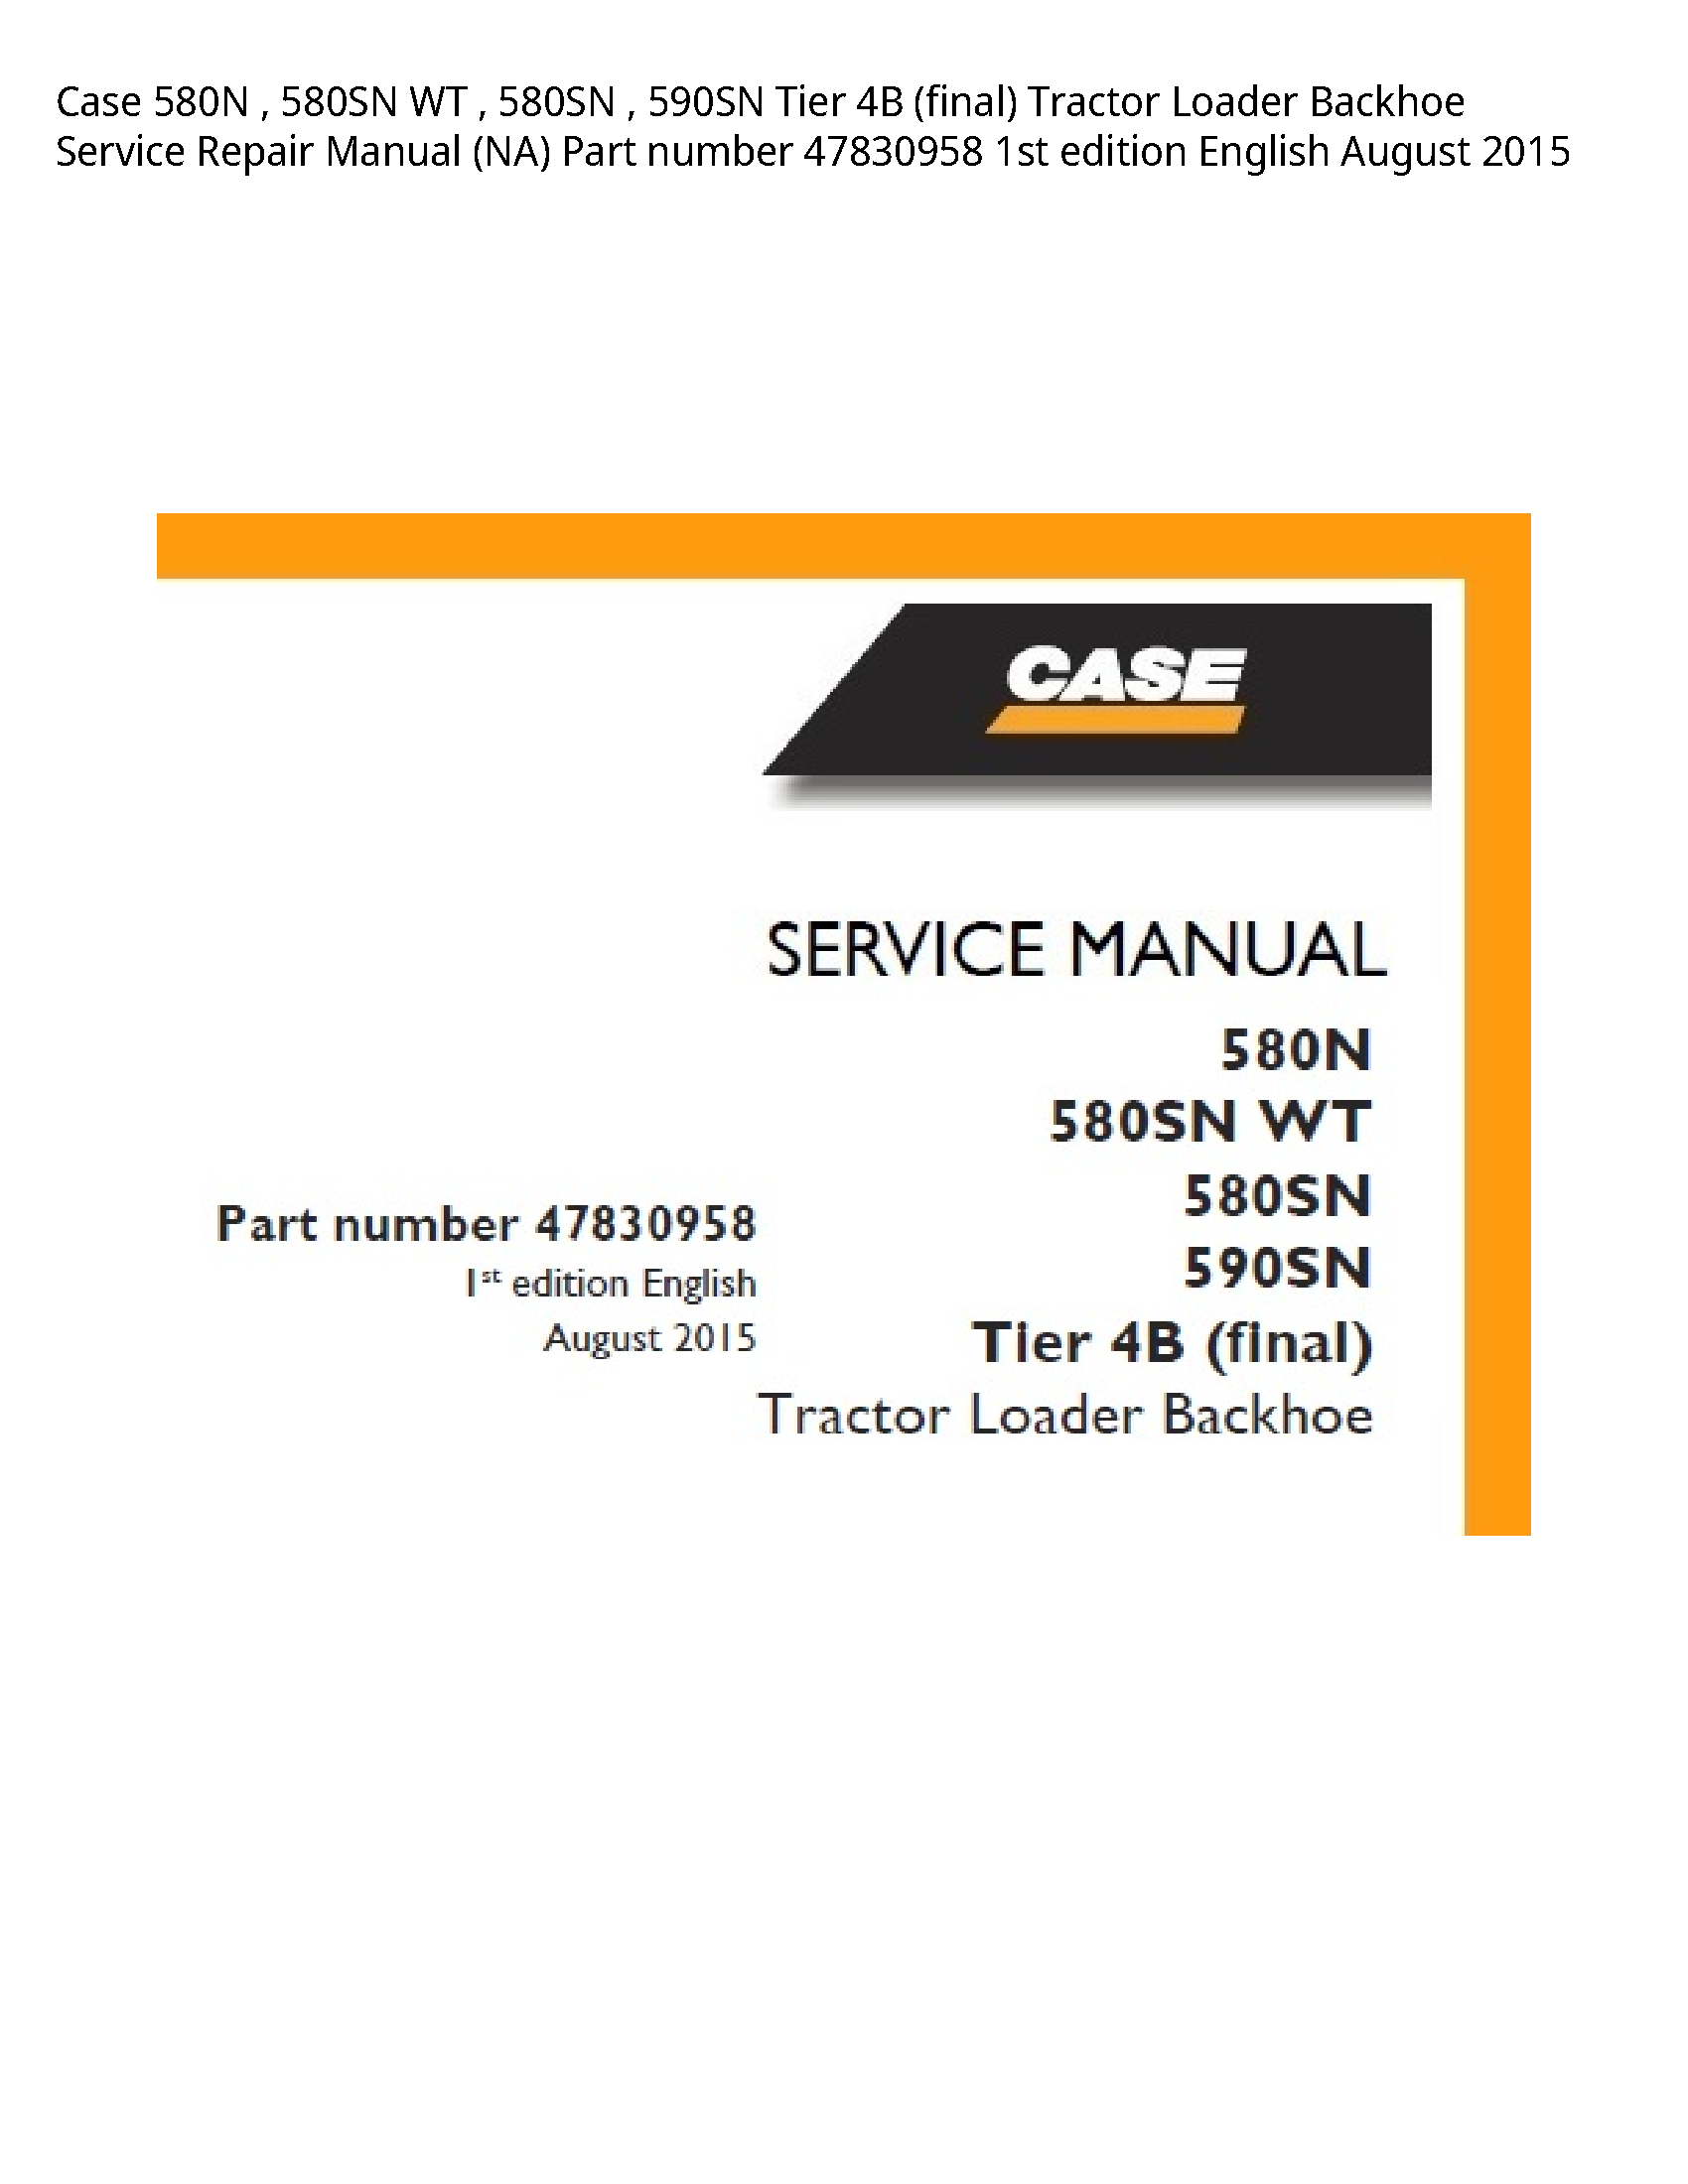 Case/Case IH 580N WT Tier (final) Tractor Loader Backhoe manual